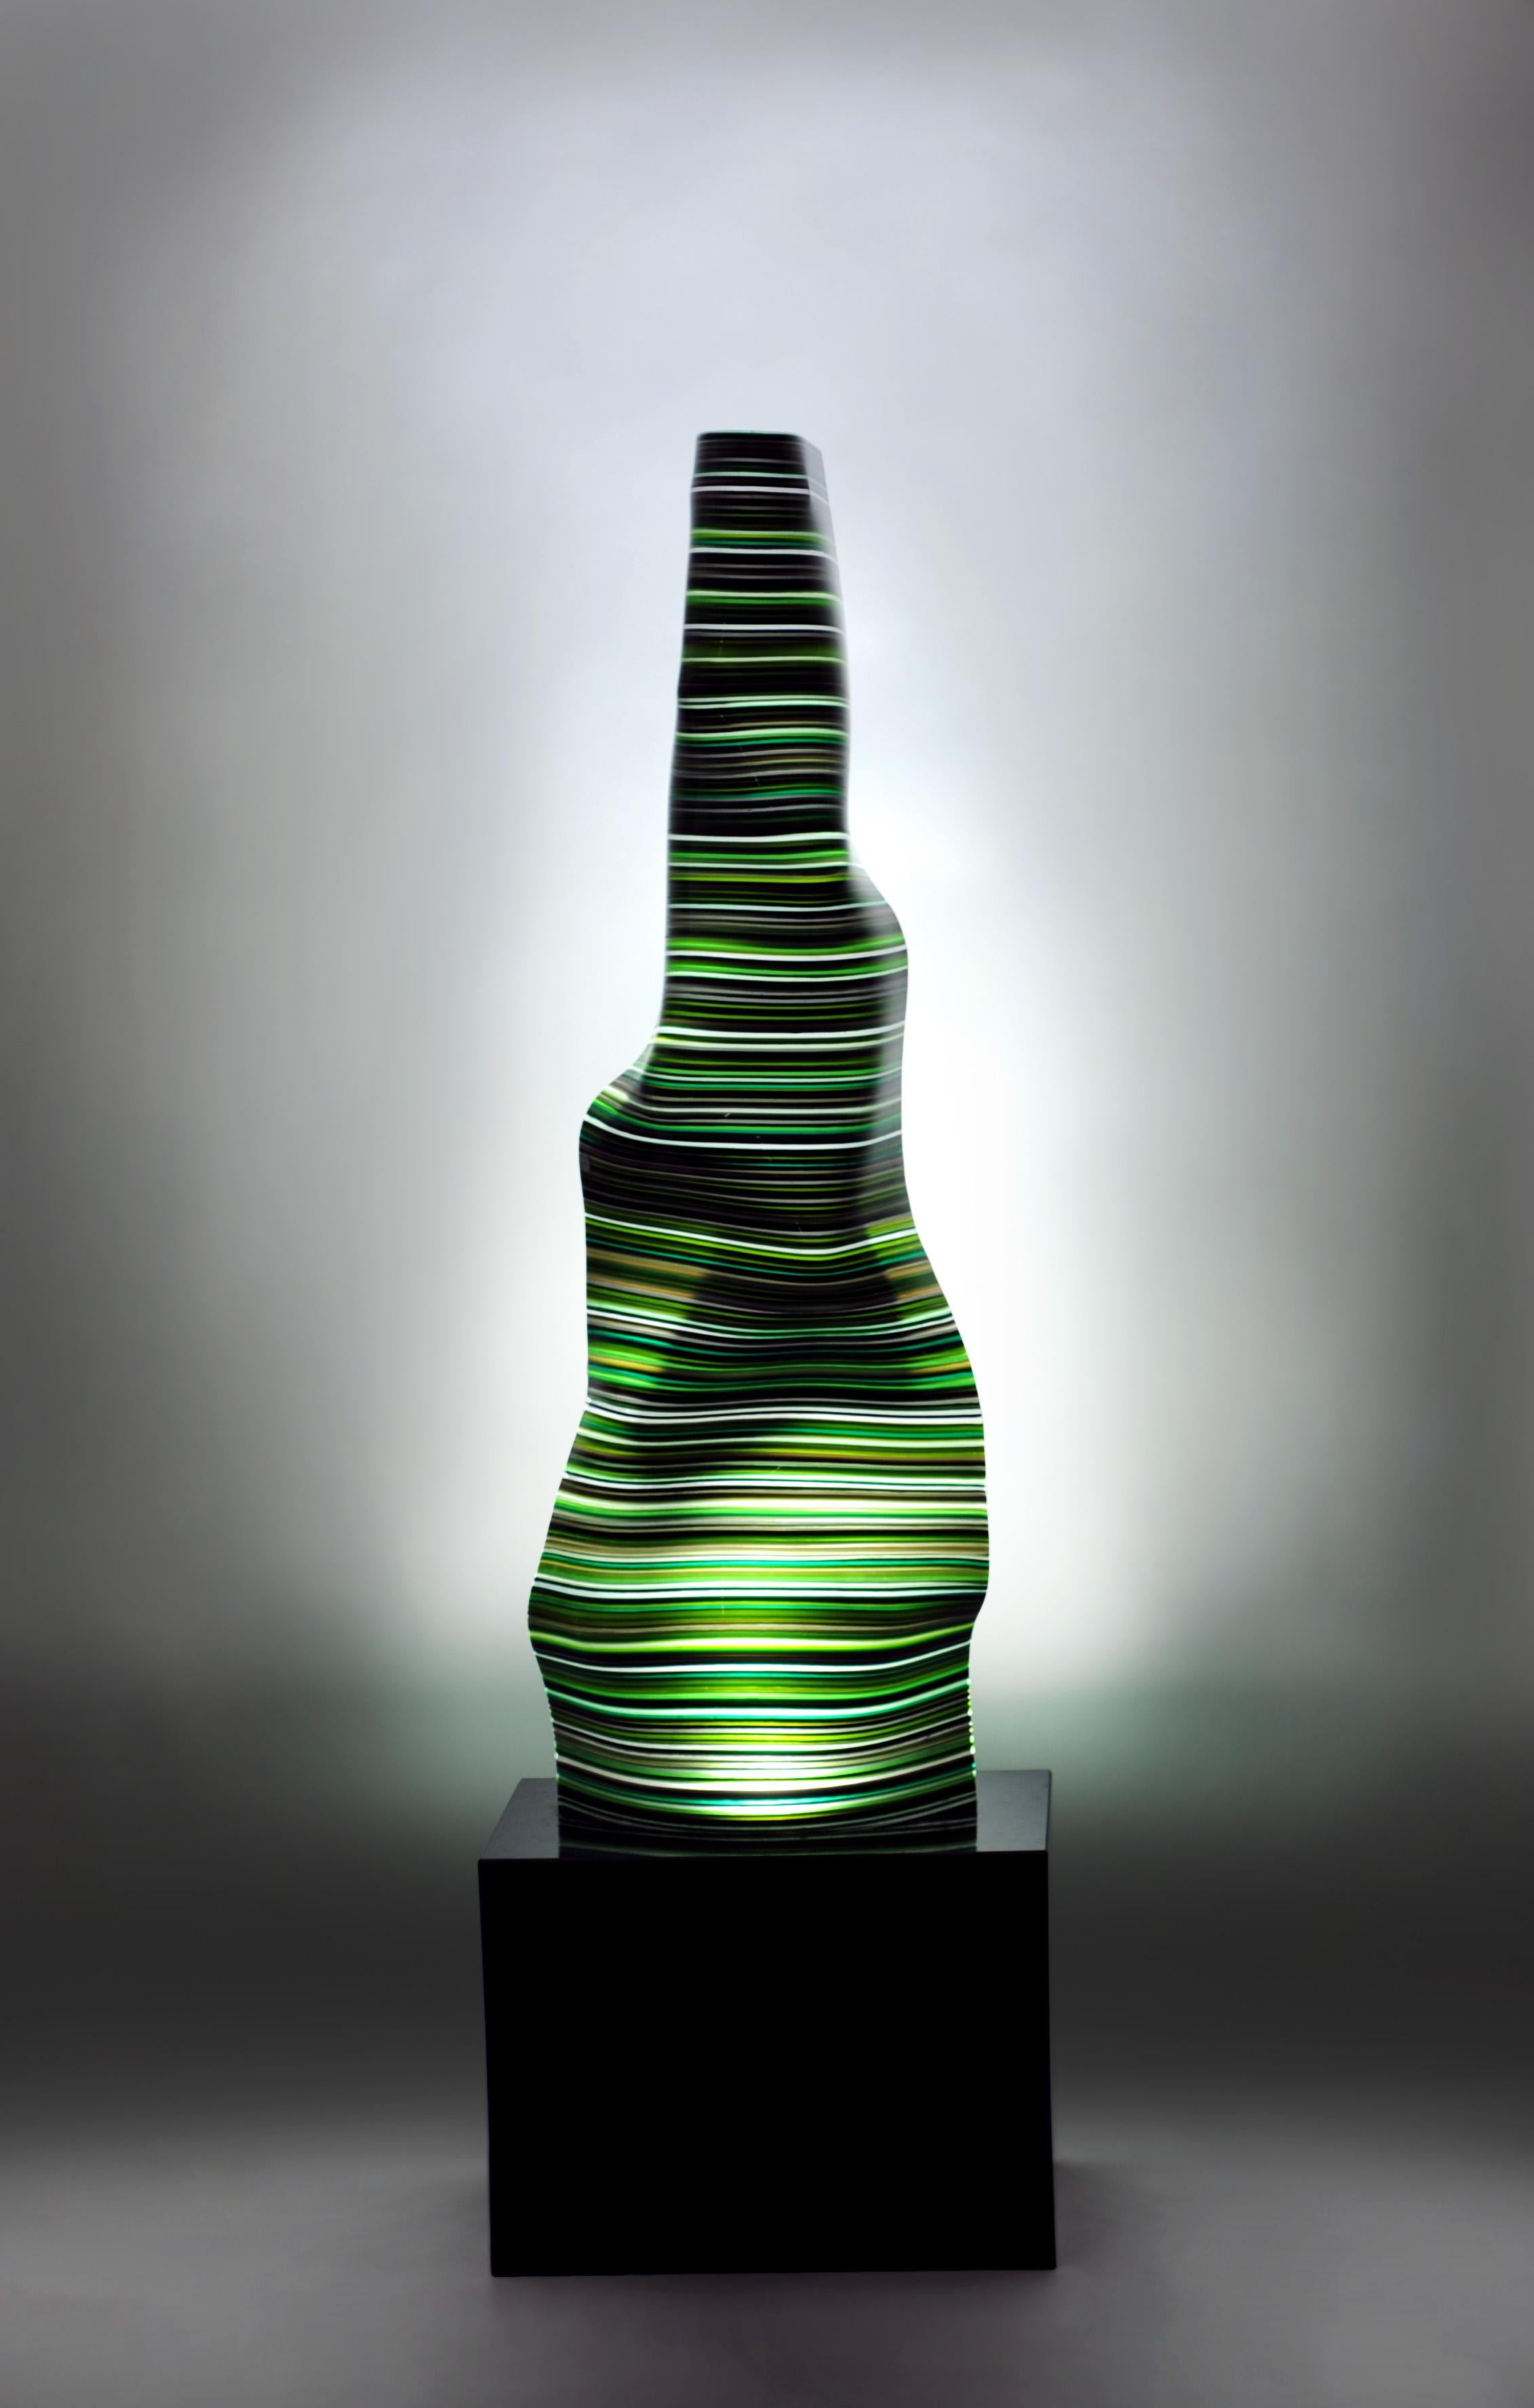 Barcodelampe mit Granitsockel. 
Dieses Stück aus geschmolzenem Glas gehört zu der von Orfeo Quagliata entworfenen Kollektion Barcode Magikarpet. Exklusive Techniken des Künstlers. 100% handgefertigt mit hochwertigstem Material. 
Dieses elegante